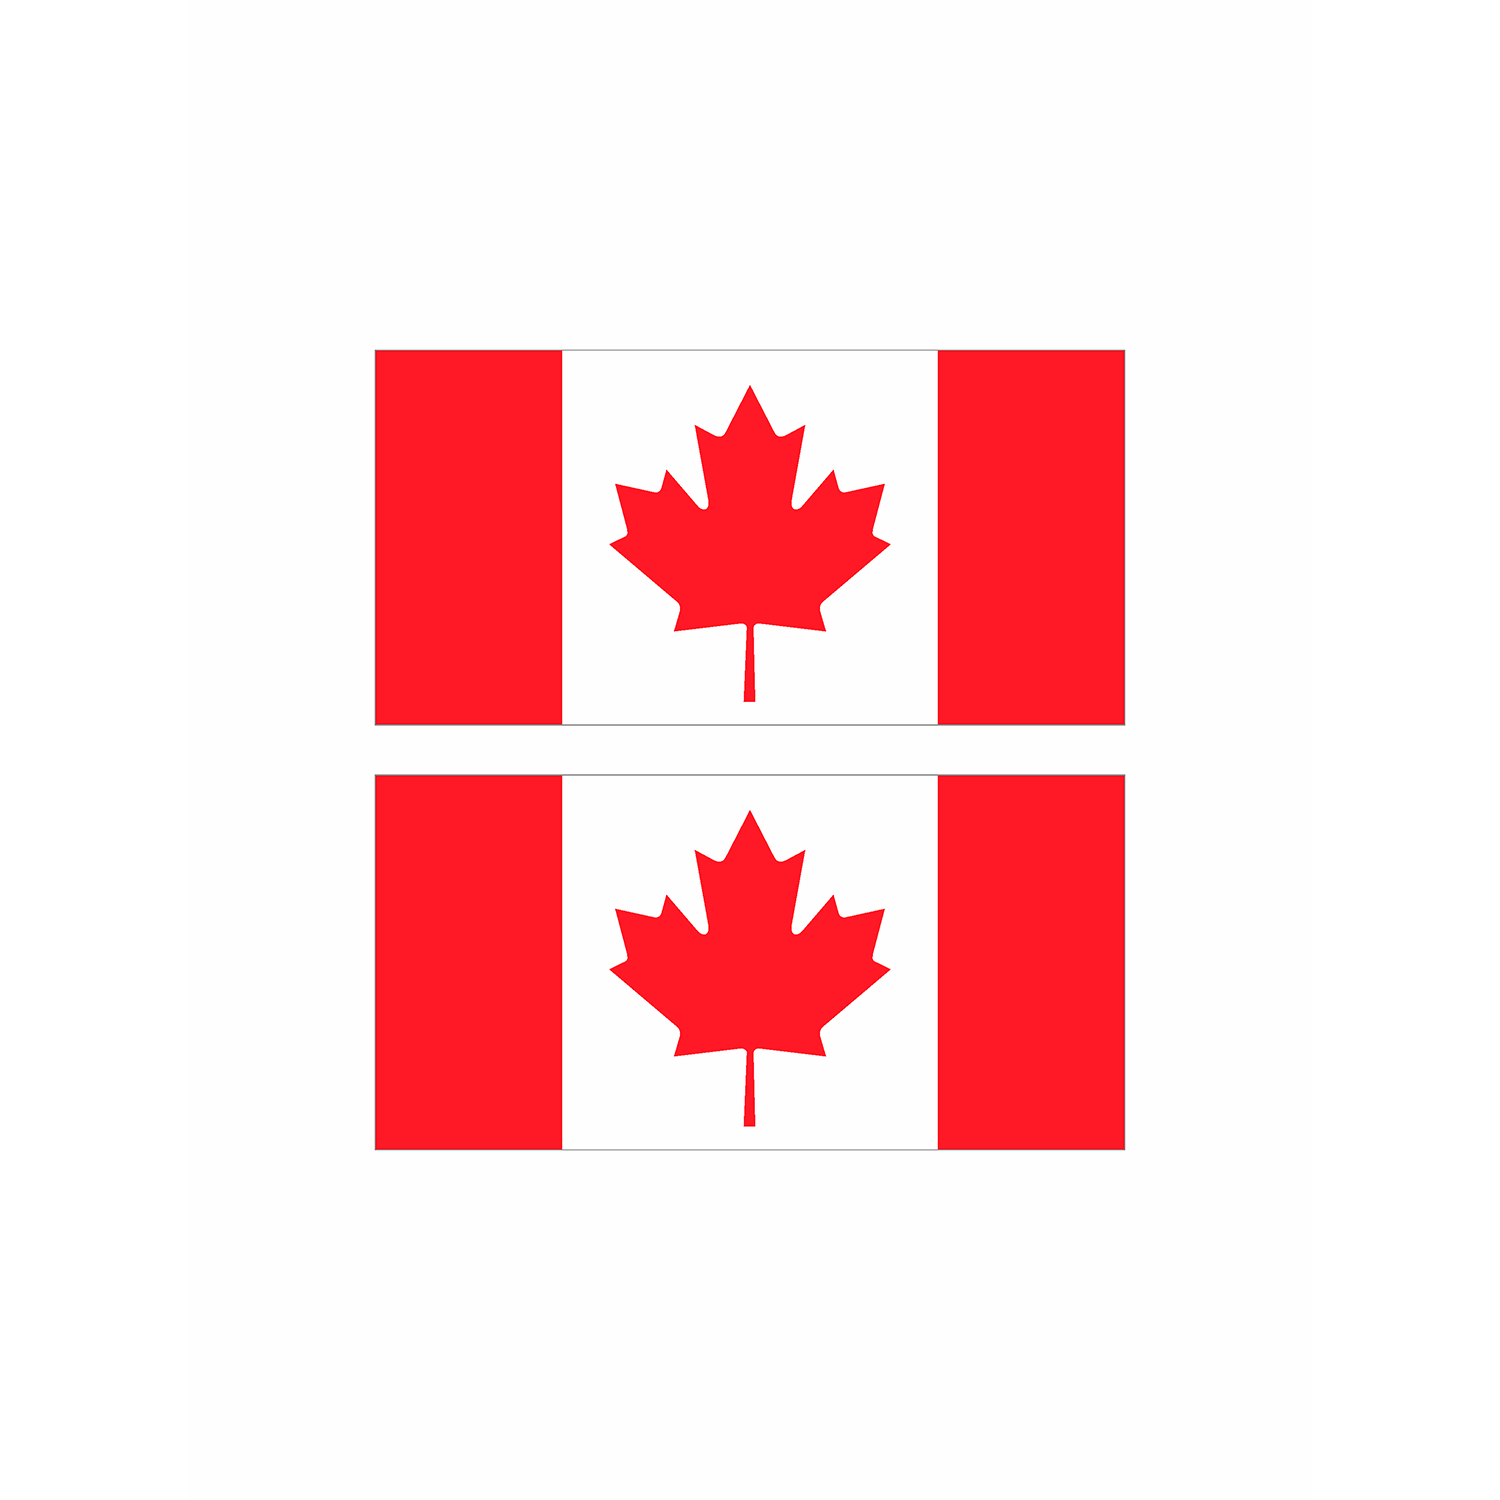 Раскраска Флаг Канада Распечатать Бесплатно для Взрослых и Детей